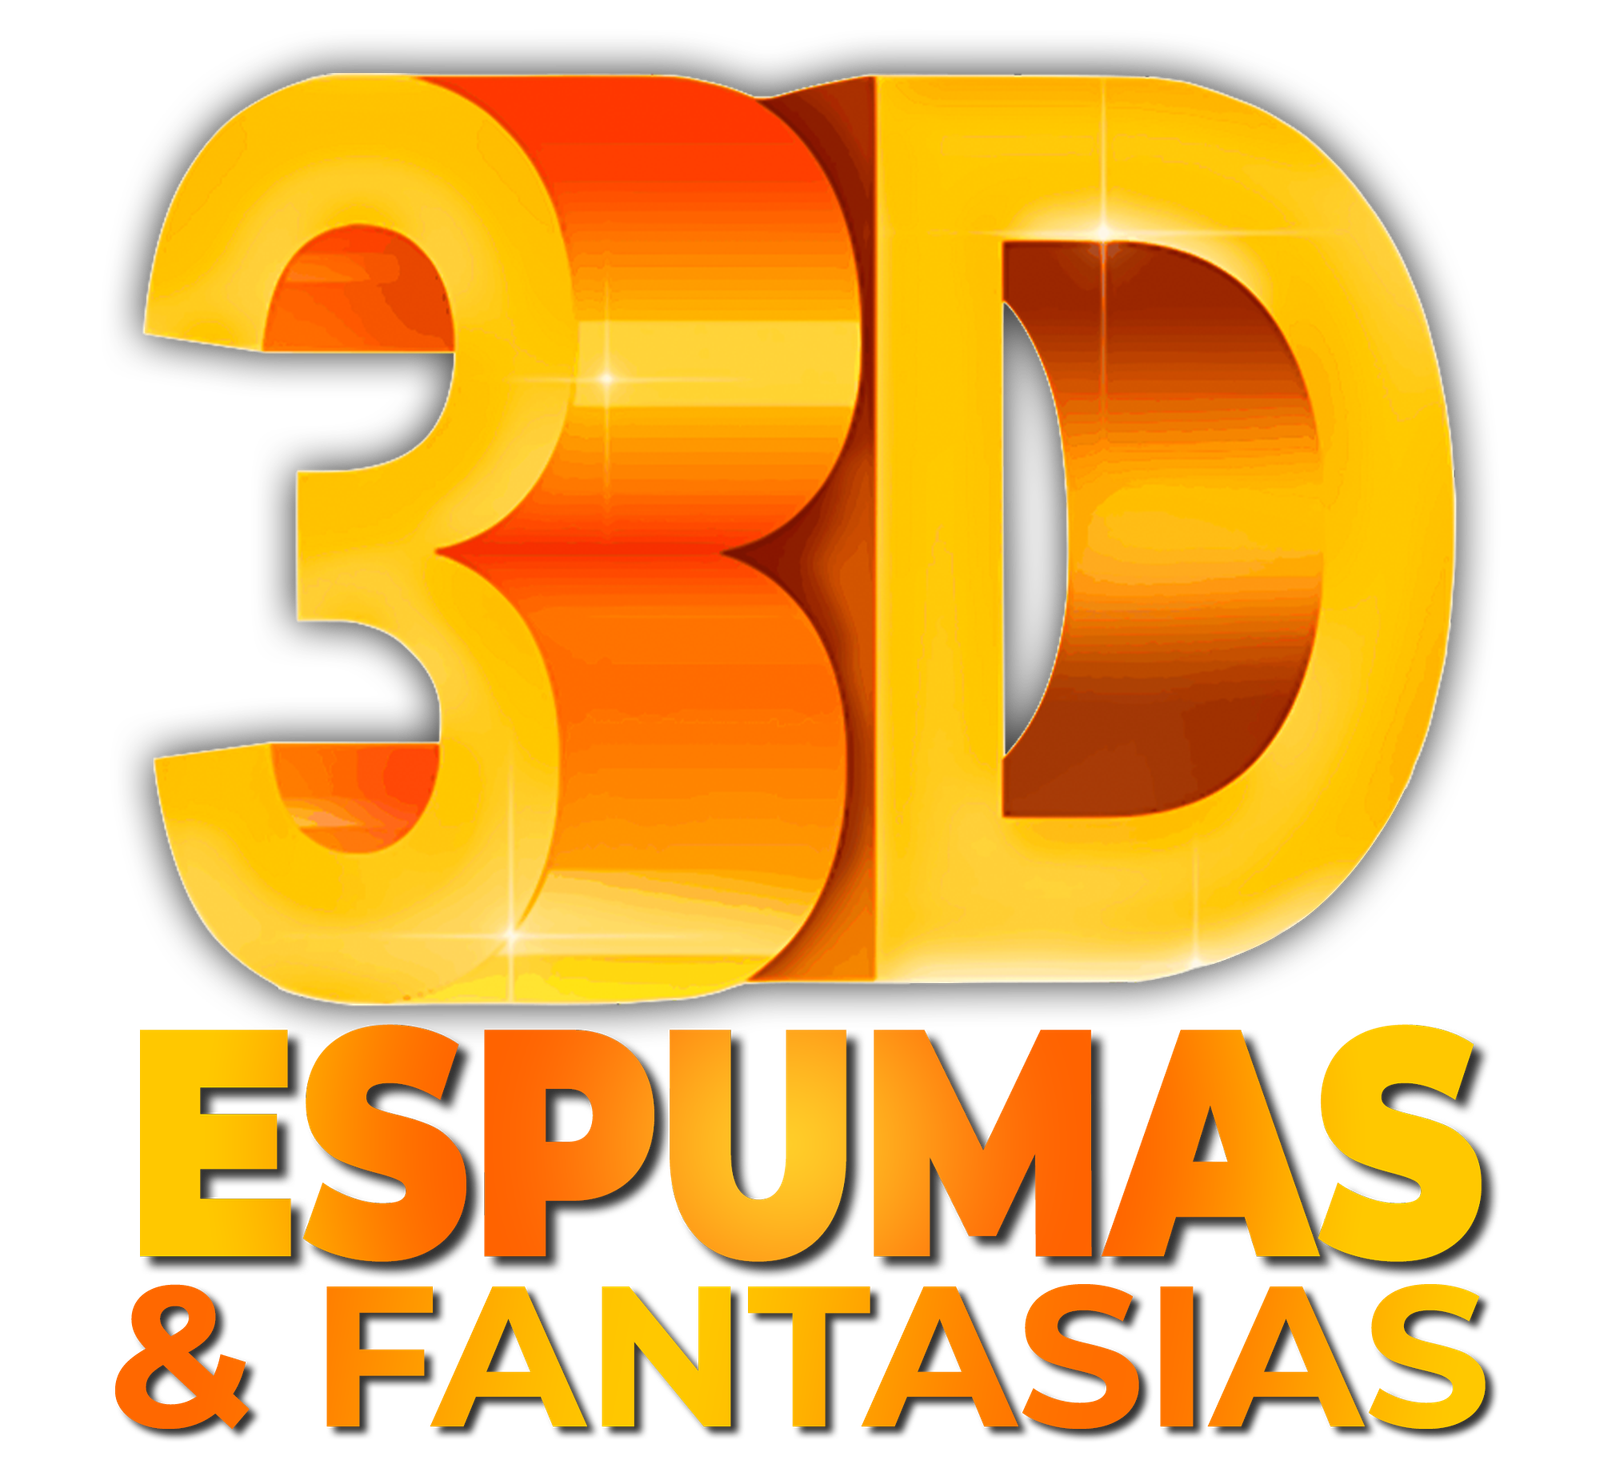 Fantasia Arlequina com Taco – 3D Espumas